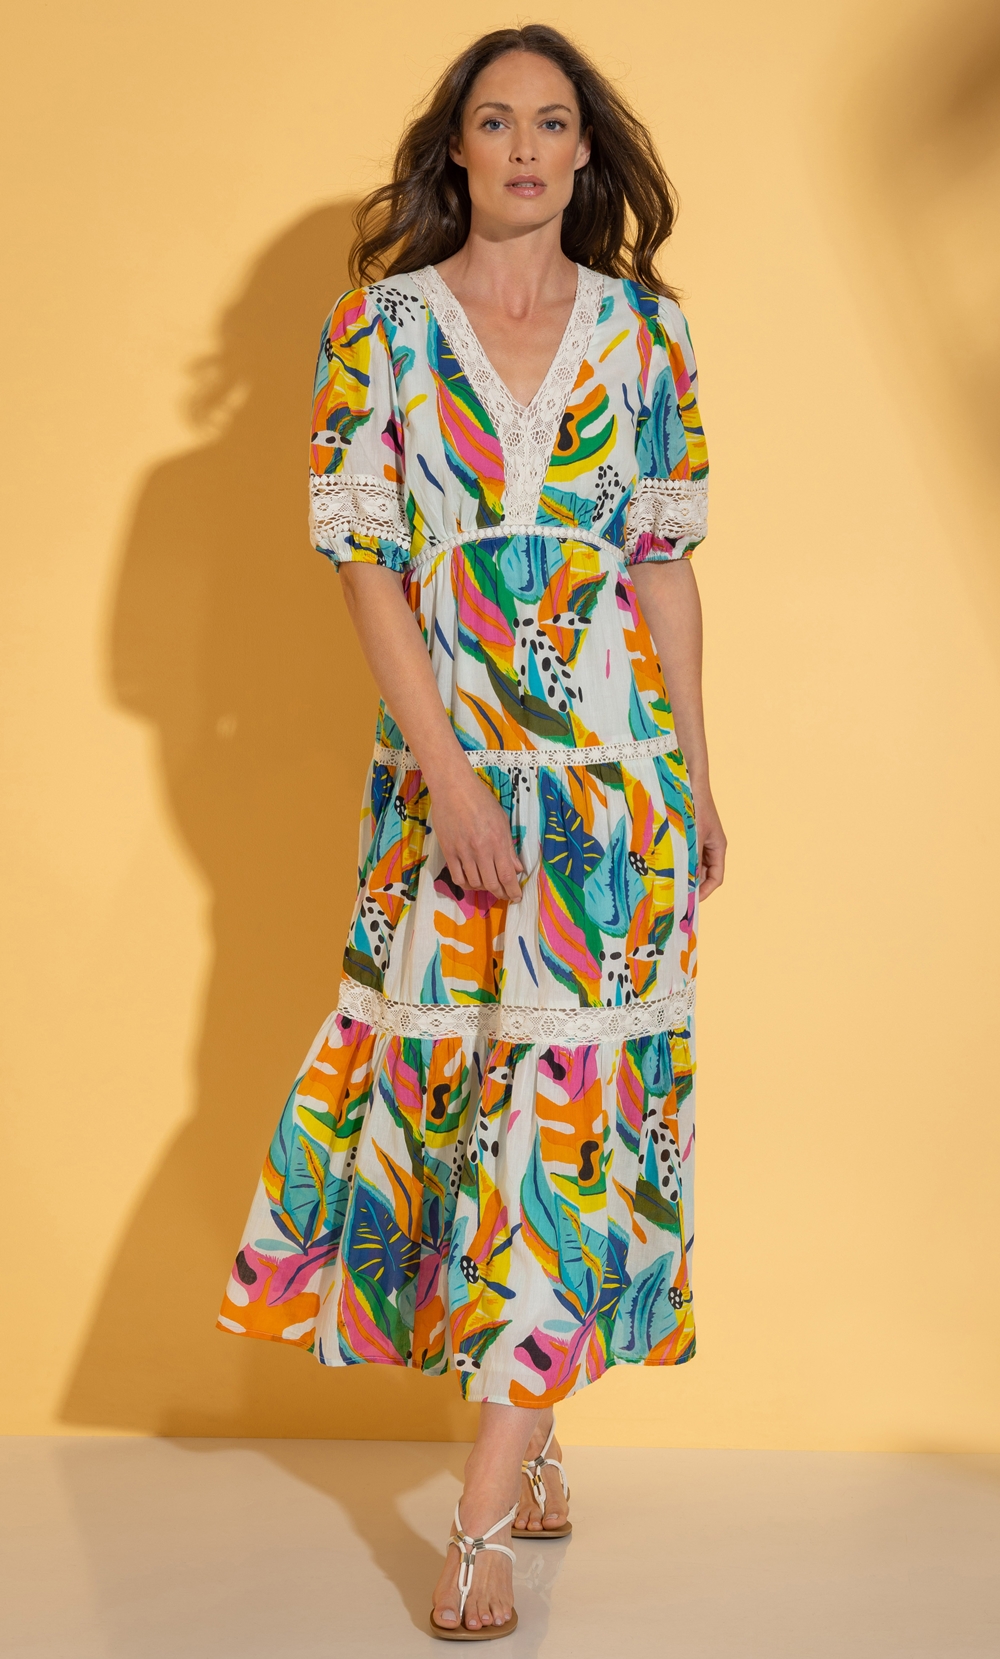 Brands - Klass Printed Cotton Lace Trim Maxi Dress Multi Women’s